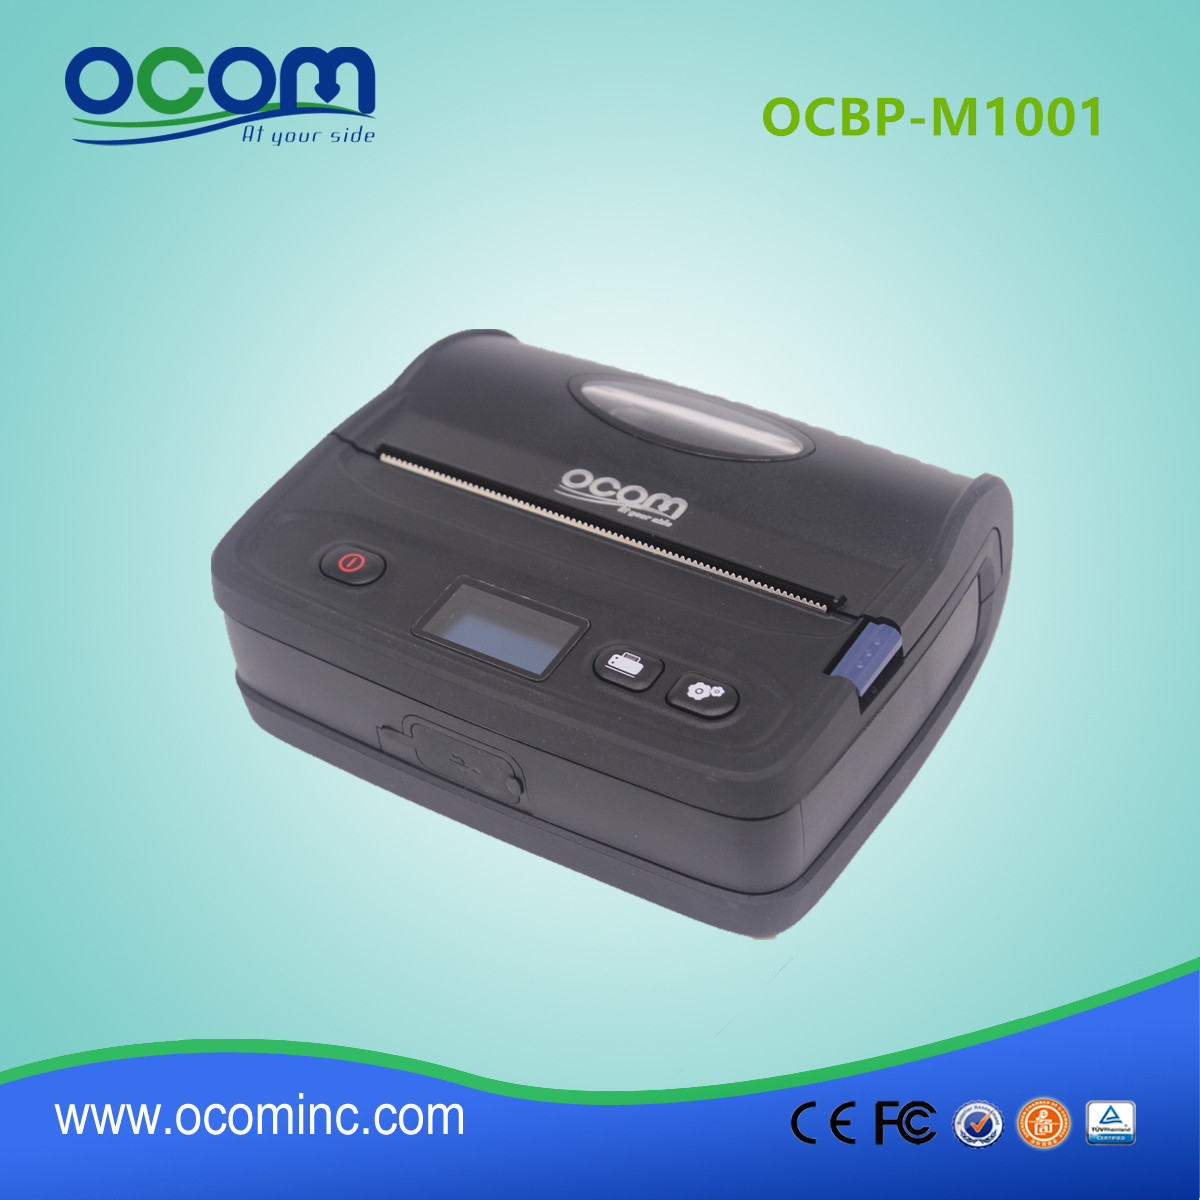 OCBP-M1001 4 pouces Mini imprimante d’étiquettes Mobile portable